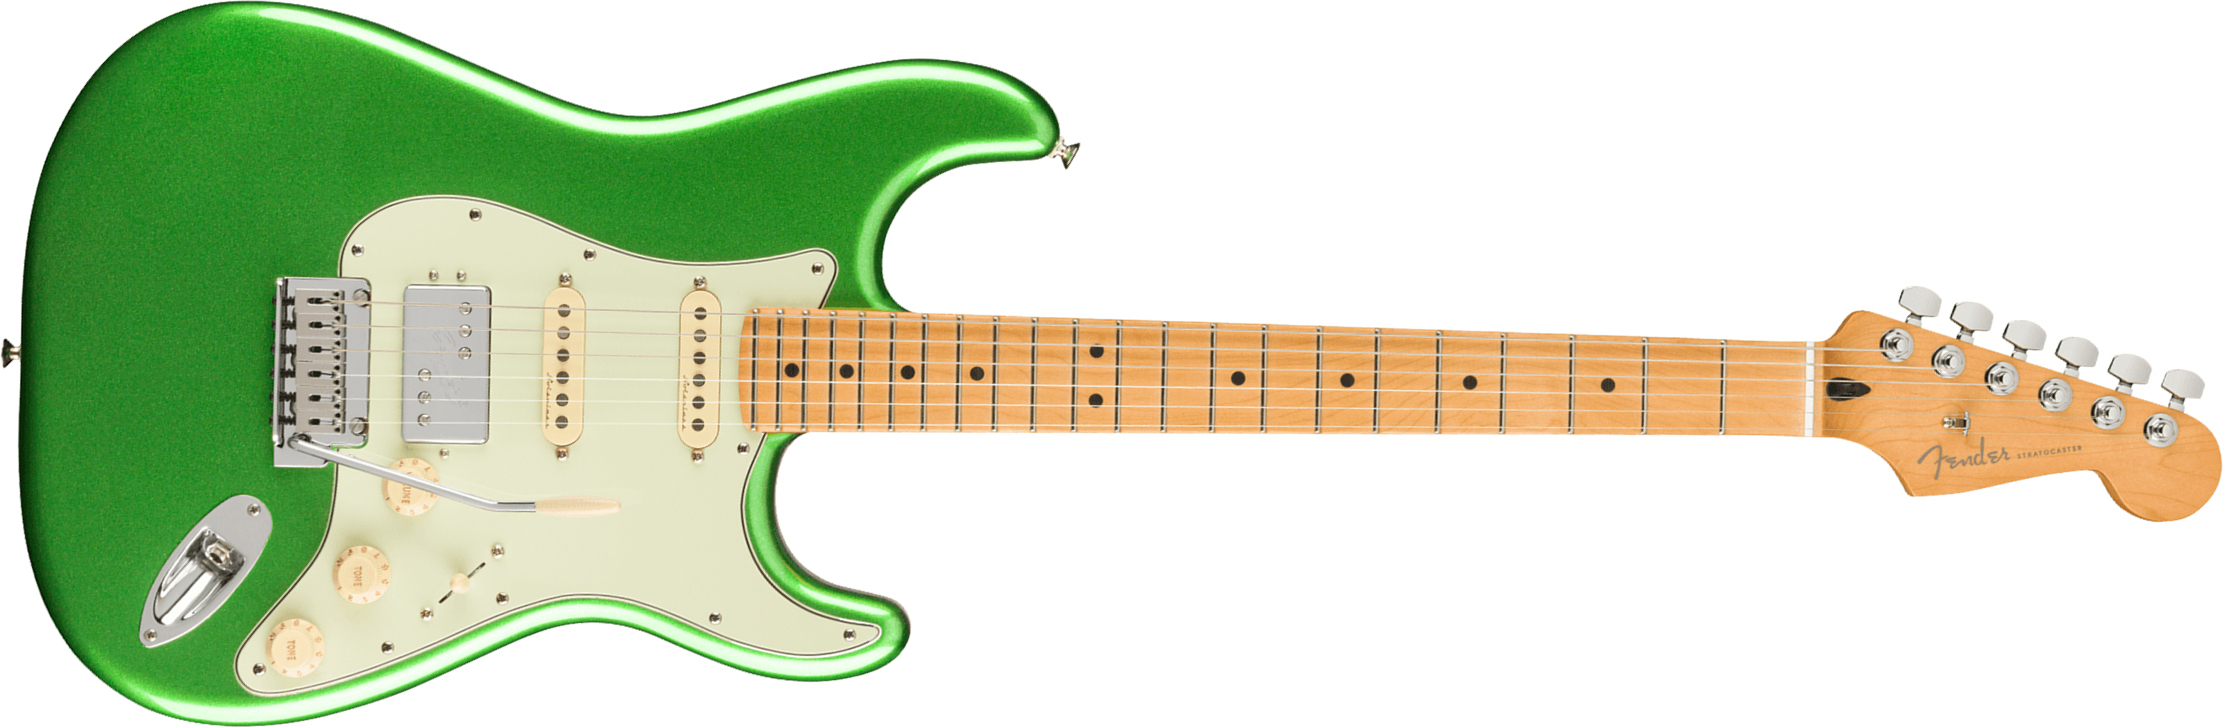 Fender Strat Player Plus Mex Hss Trem Mn - Cosmic Jade - Guitare Électrique Forme Str - Main picture